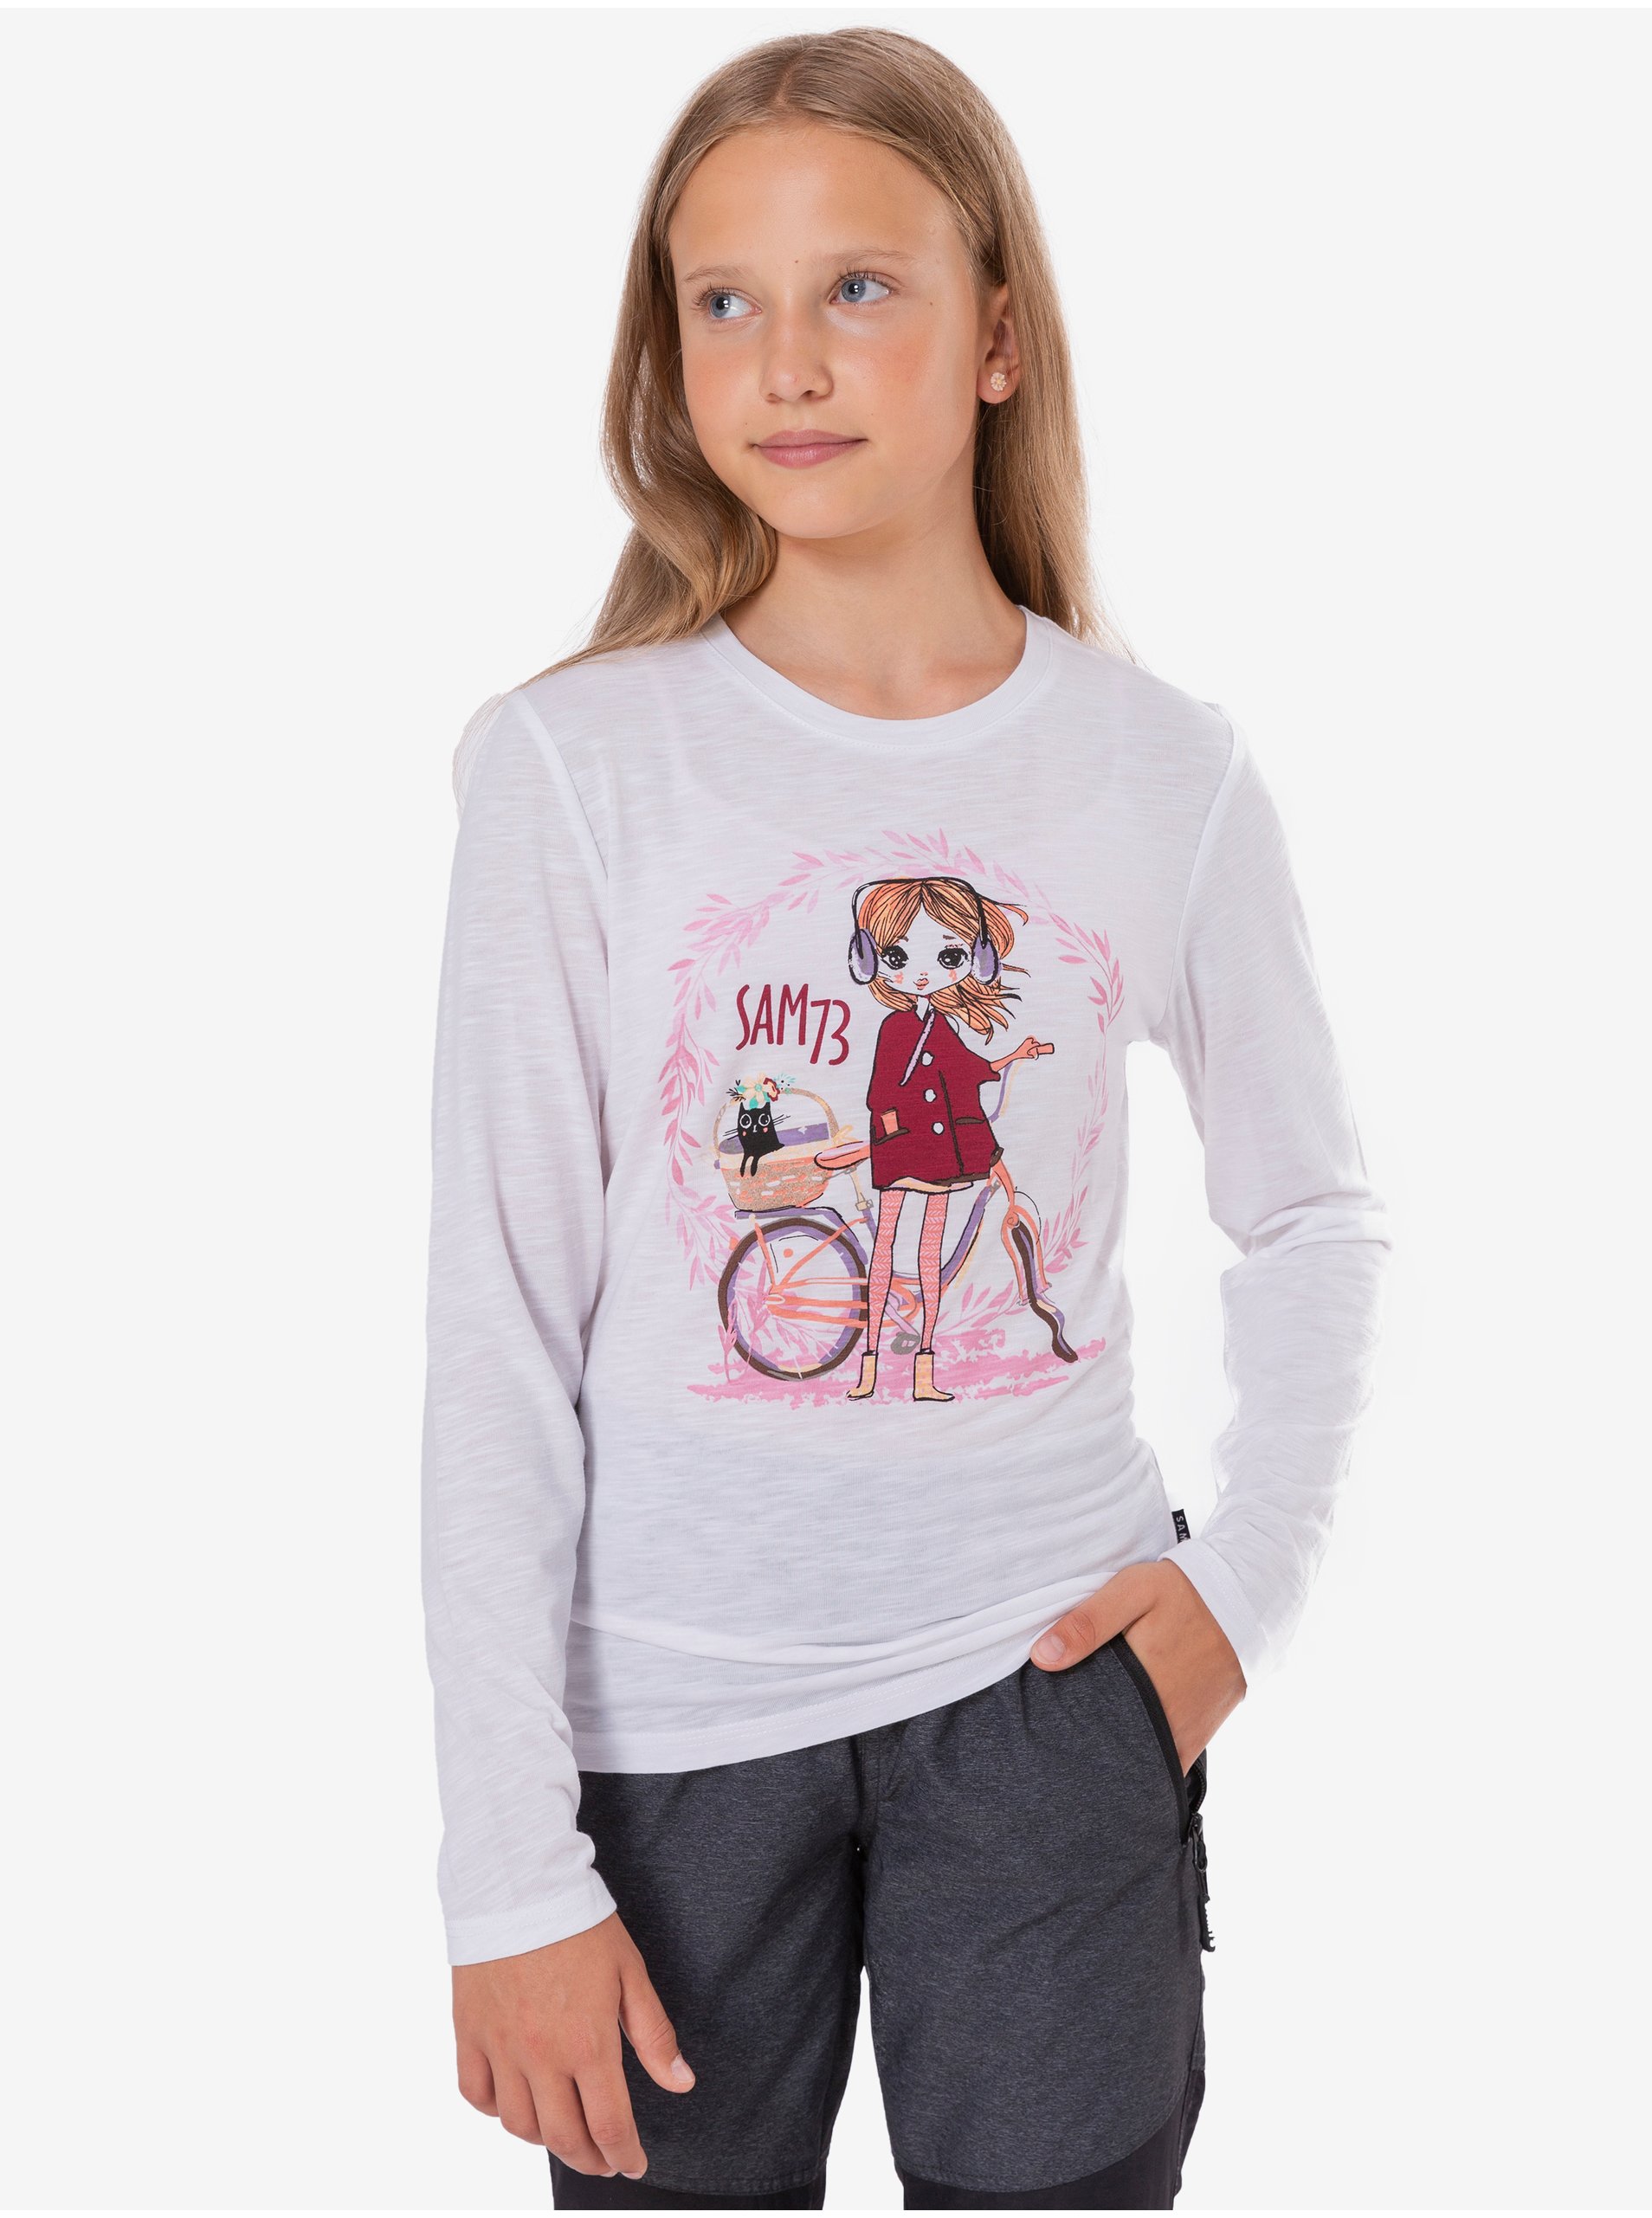 E-shop Biele dievčenské tričko s potlačou SAM 73 Charlotte